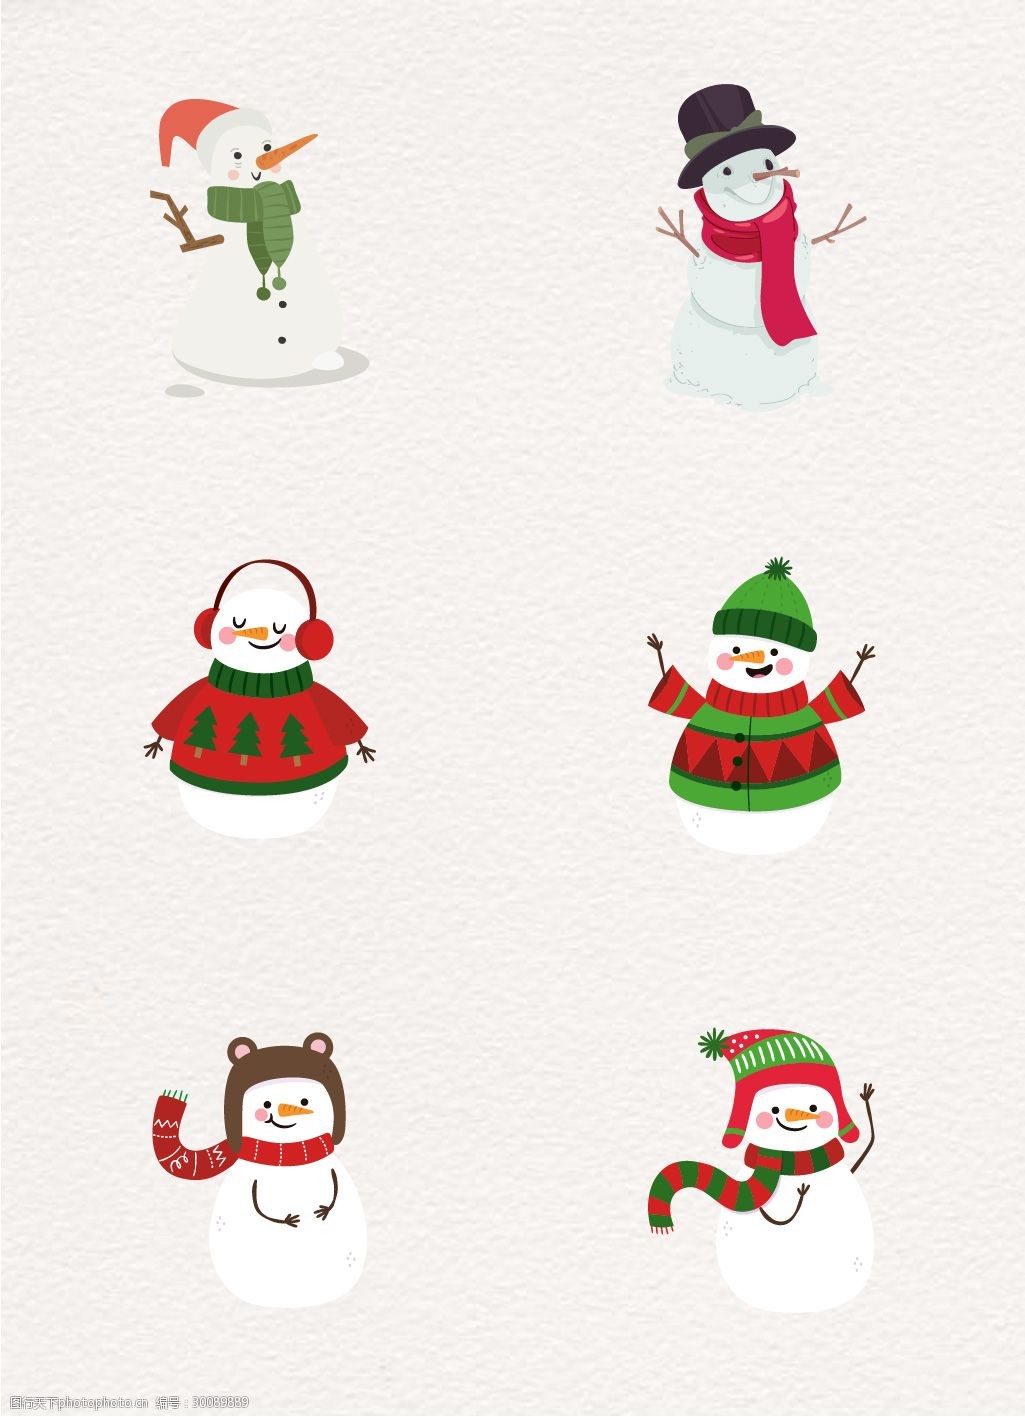 关键词:可爱的圣诞节雪人矢量素材 卡通 可爱 雪人 圣诞节 表情 节日